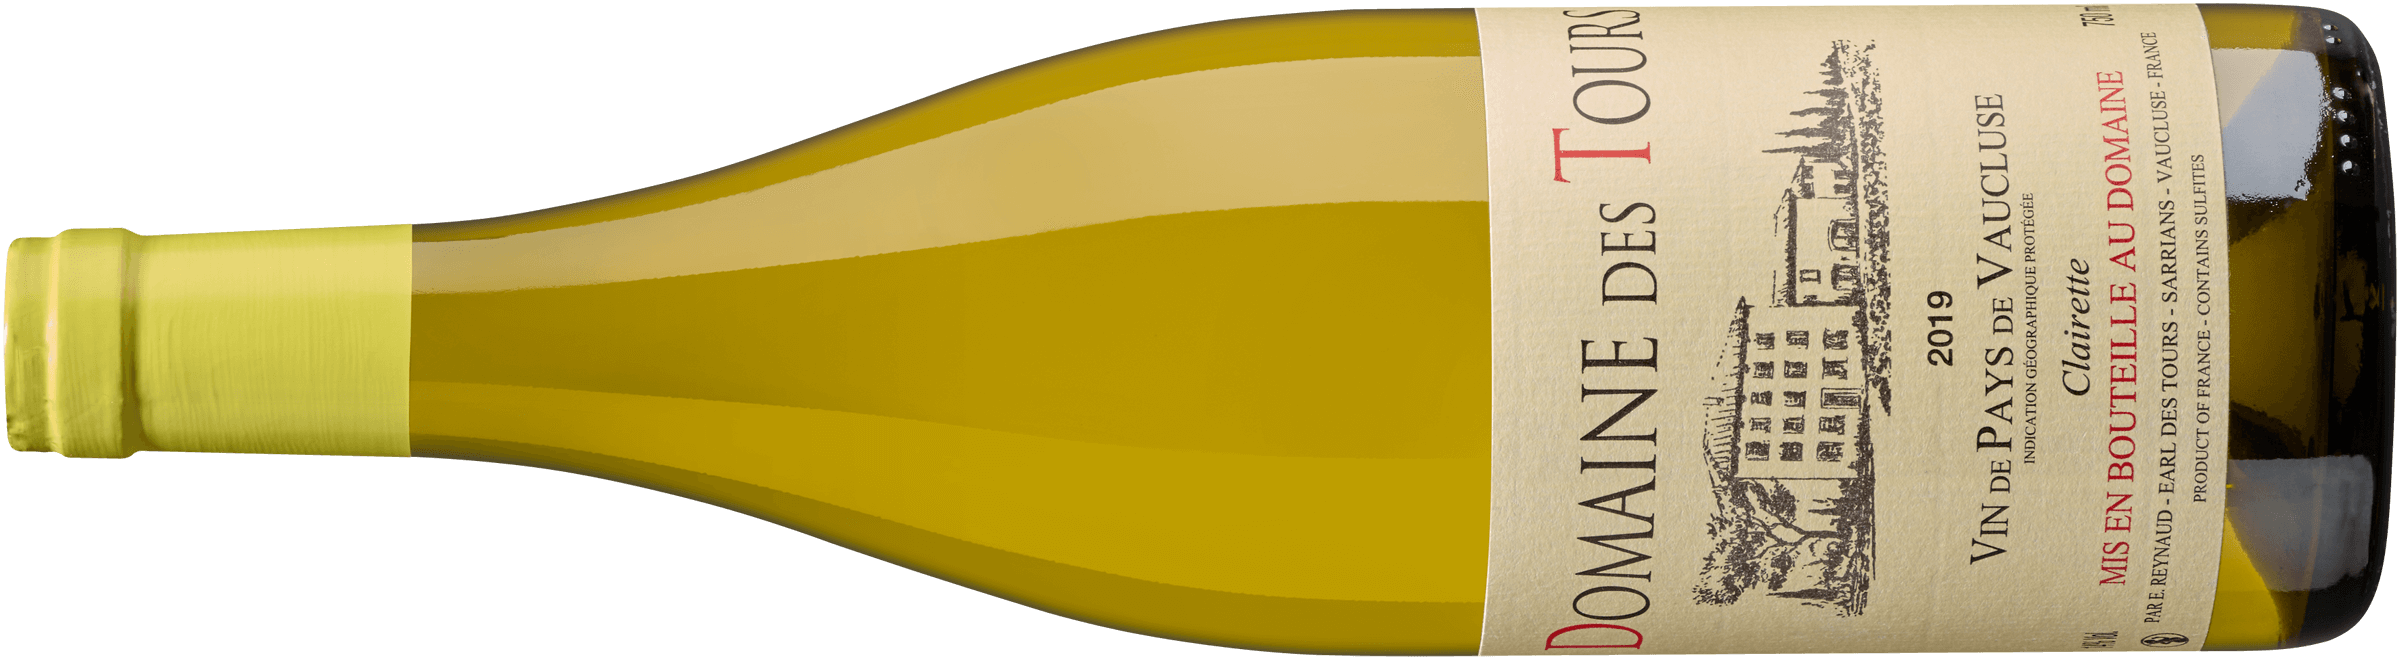 Vin de Pays de Vaucluse IGP Clairette Blanc